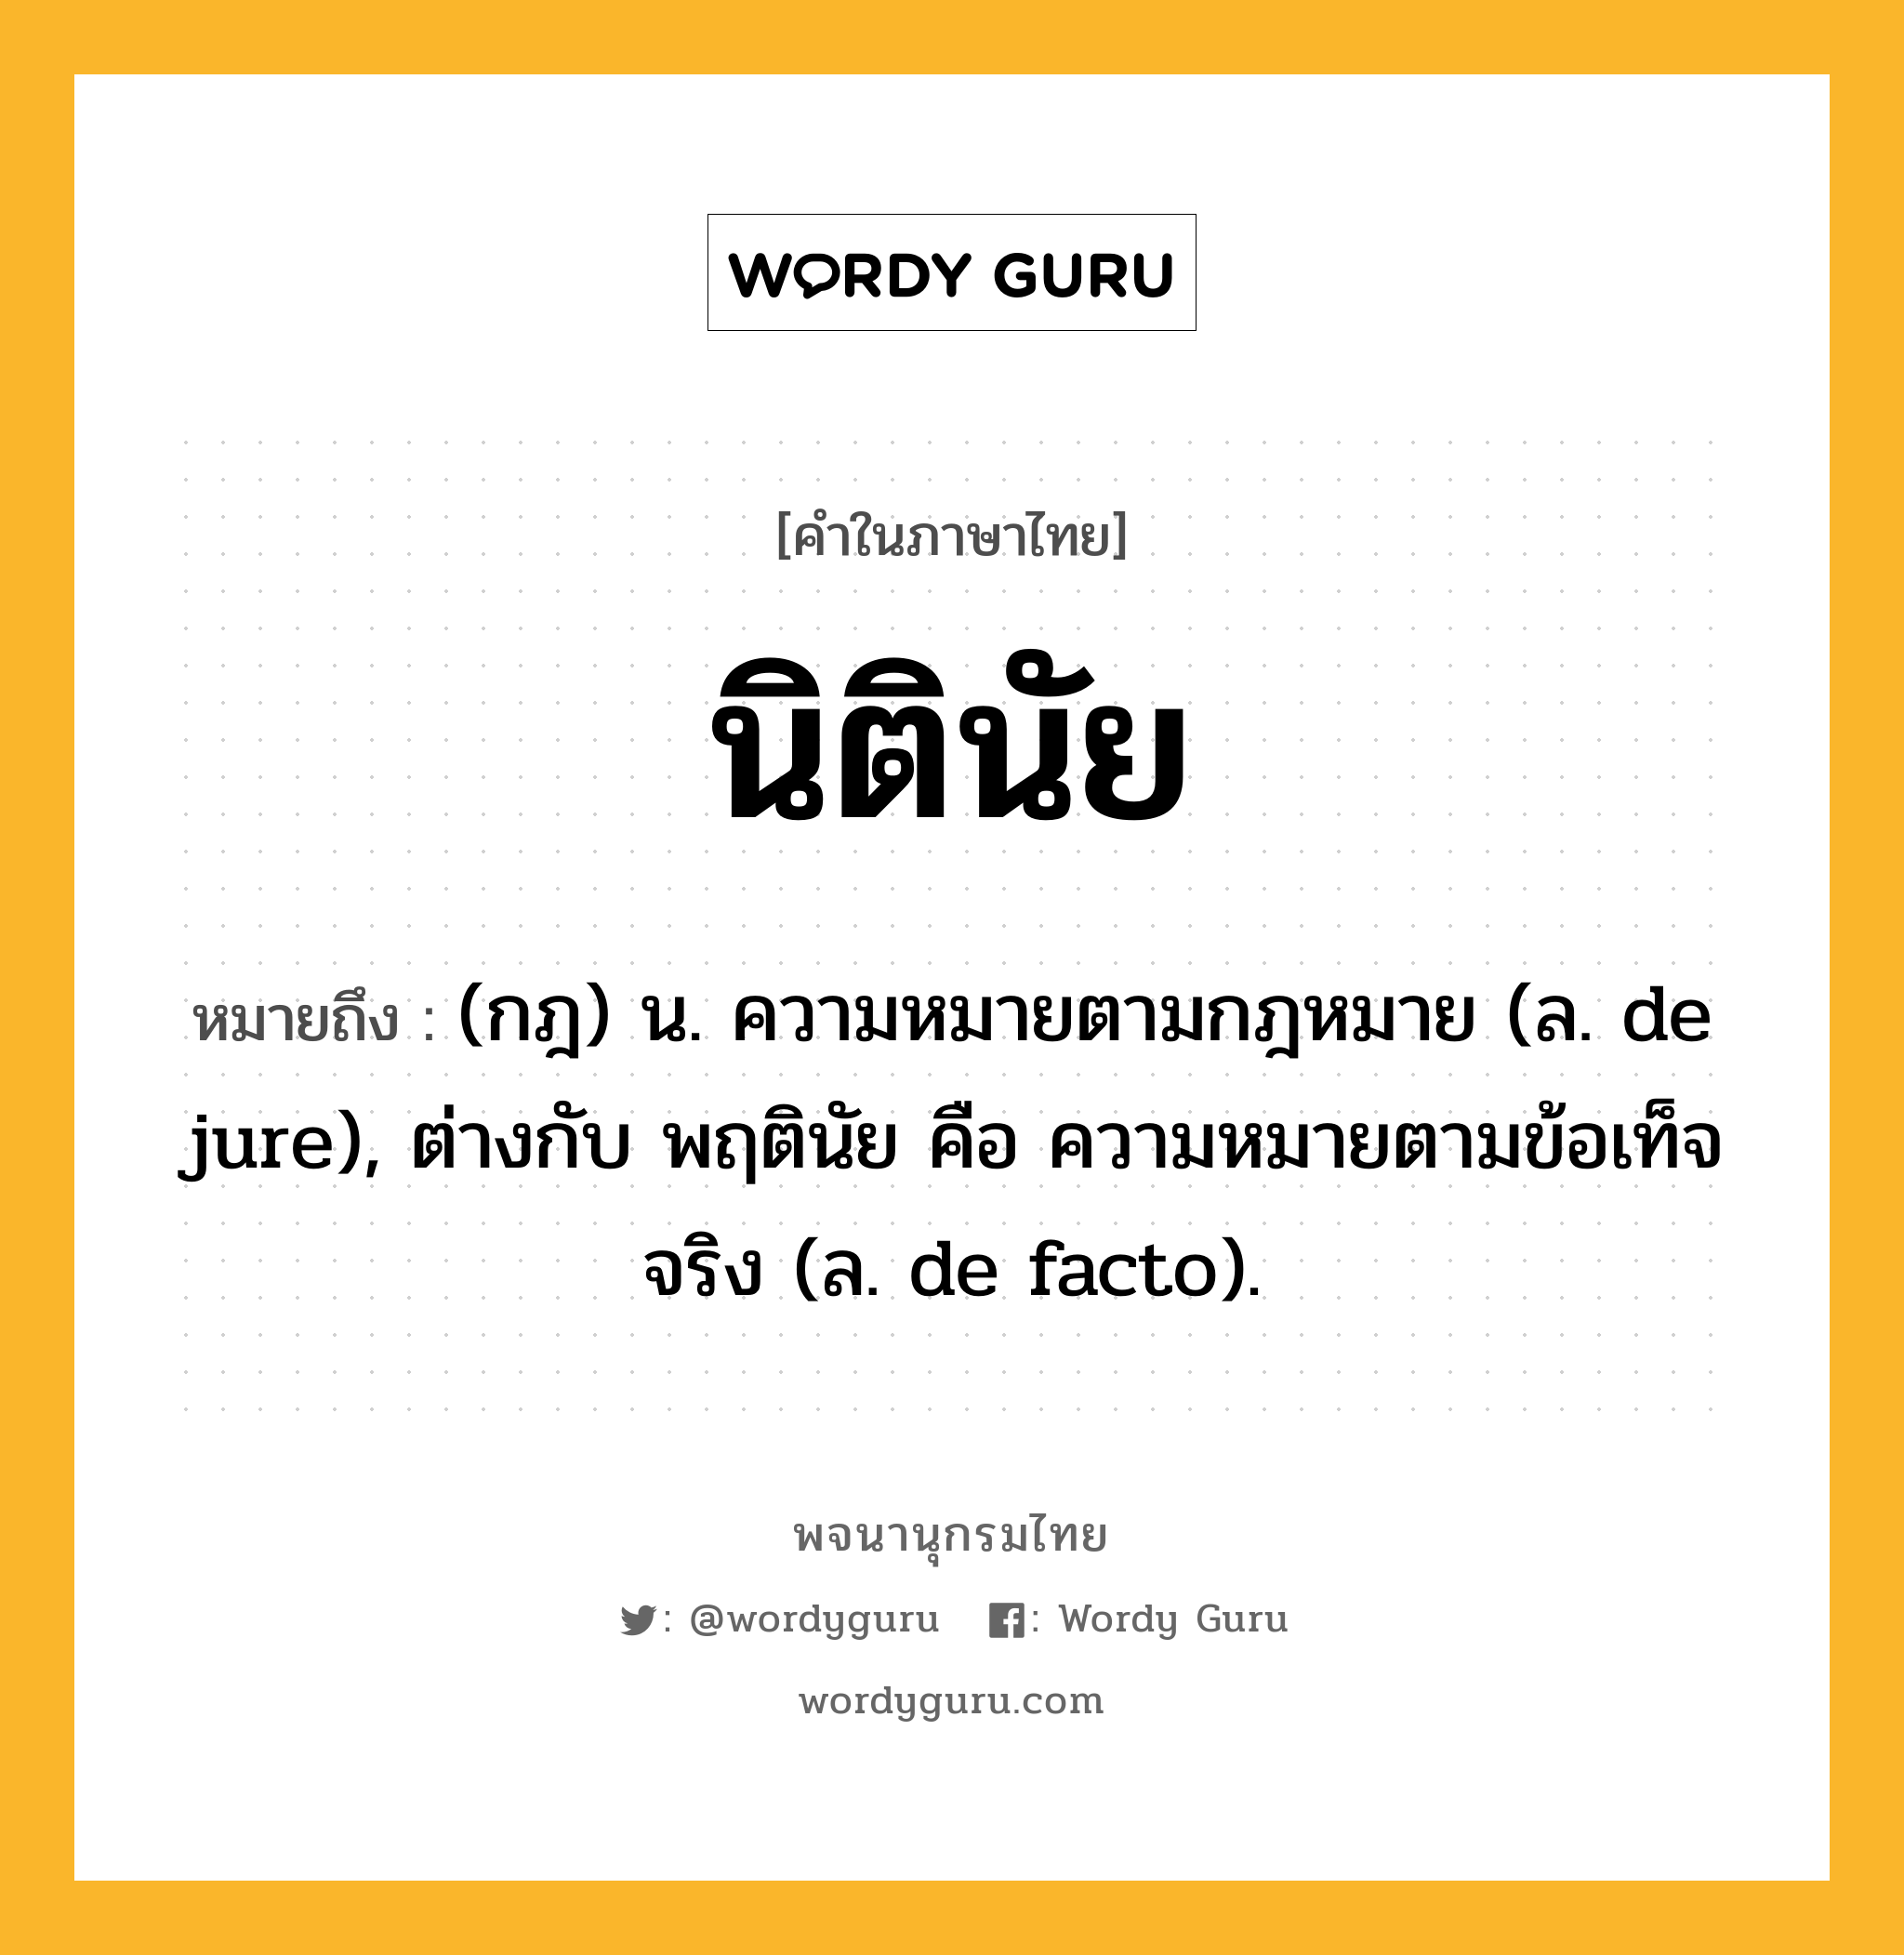 นิตินัย ความหมาย หมายถึงอะไร?, คำในภาษาไทย นิตินัย หมายถึง (กฎ) น. ความหมายตามกฎหมาย (ล. de jure), ต่างกับ พฤตินัย คือ ความหมายตามข้อเท็จจริง (ล. de facto).